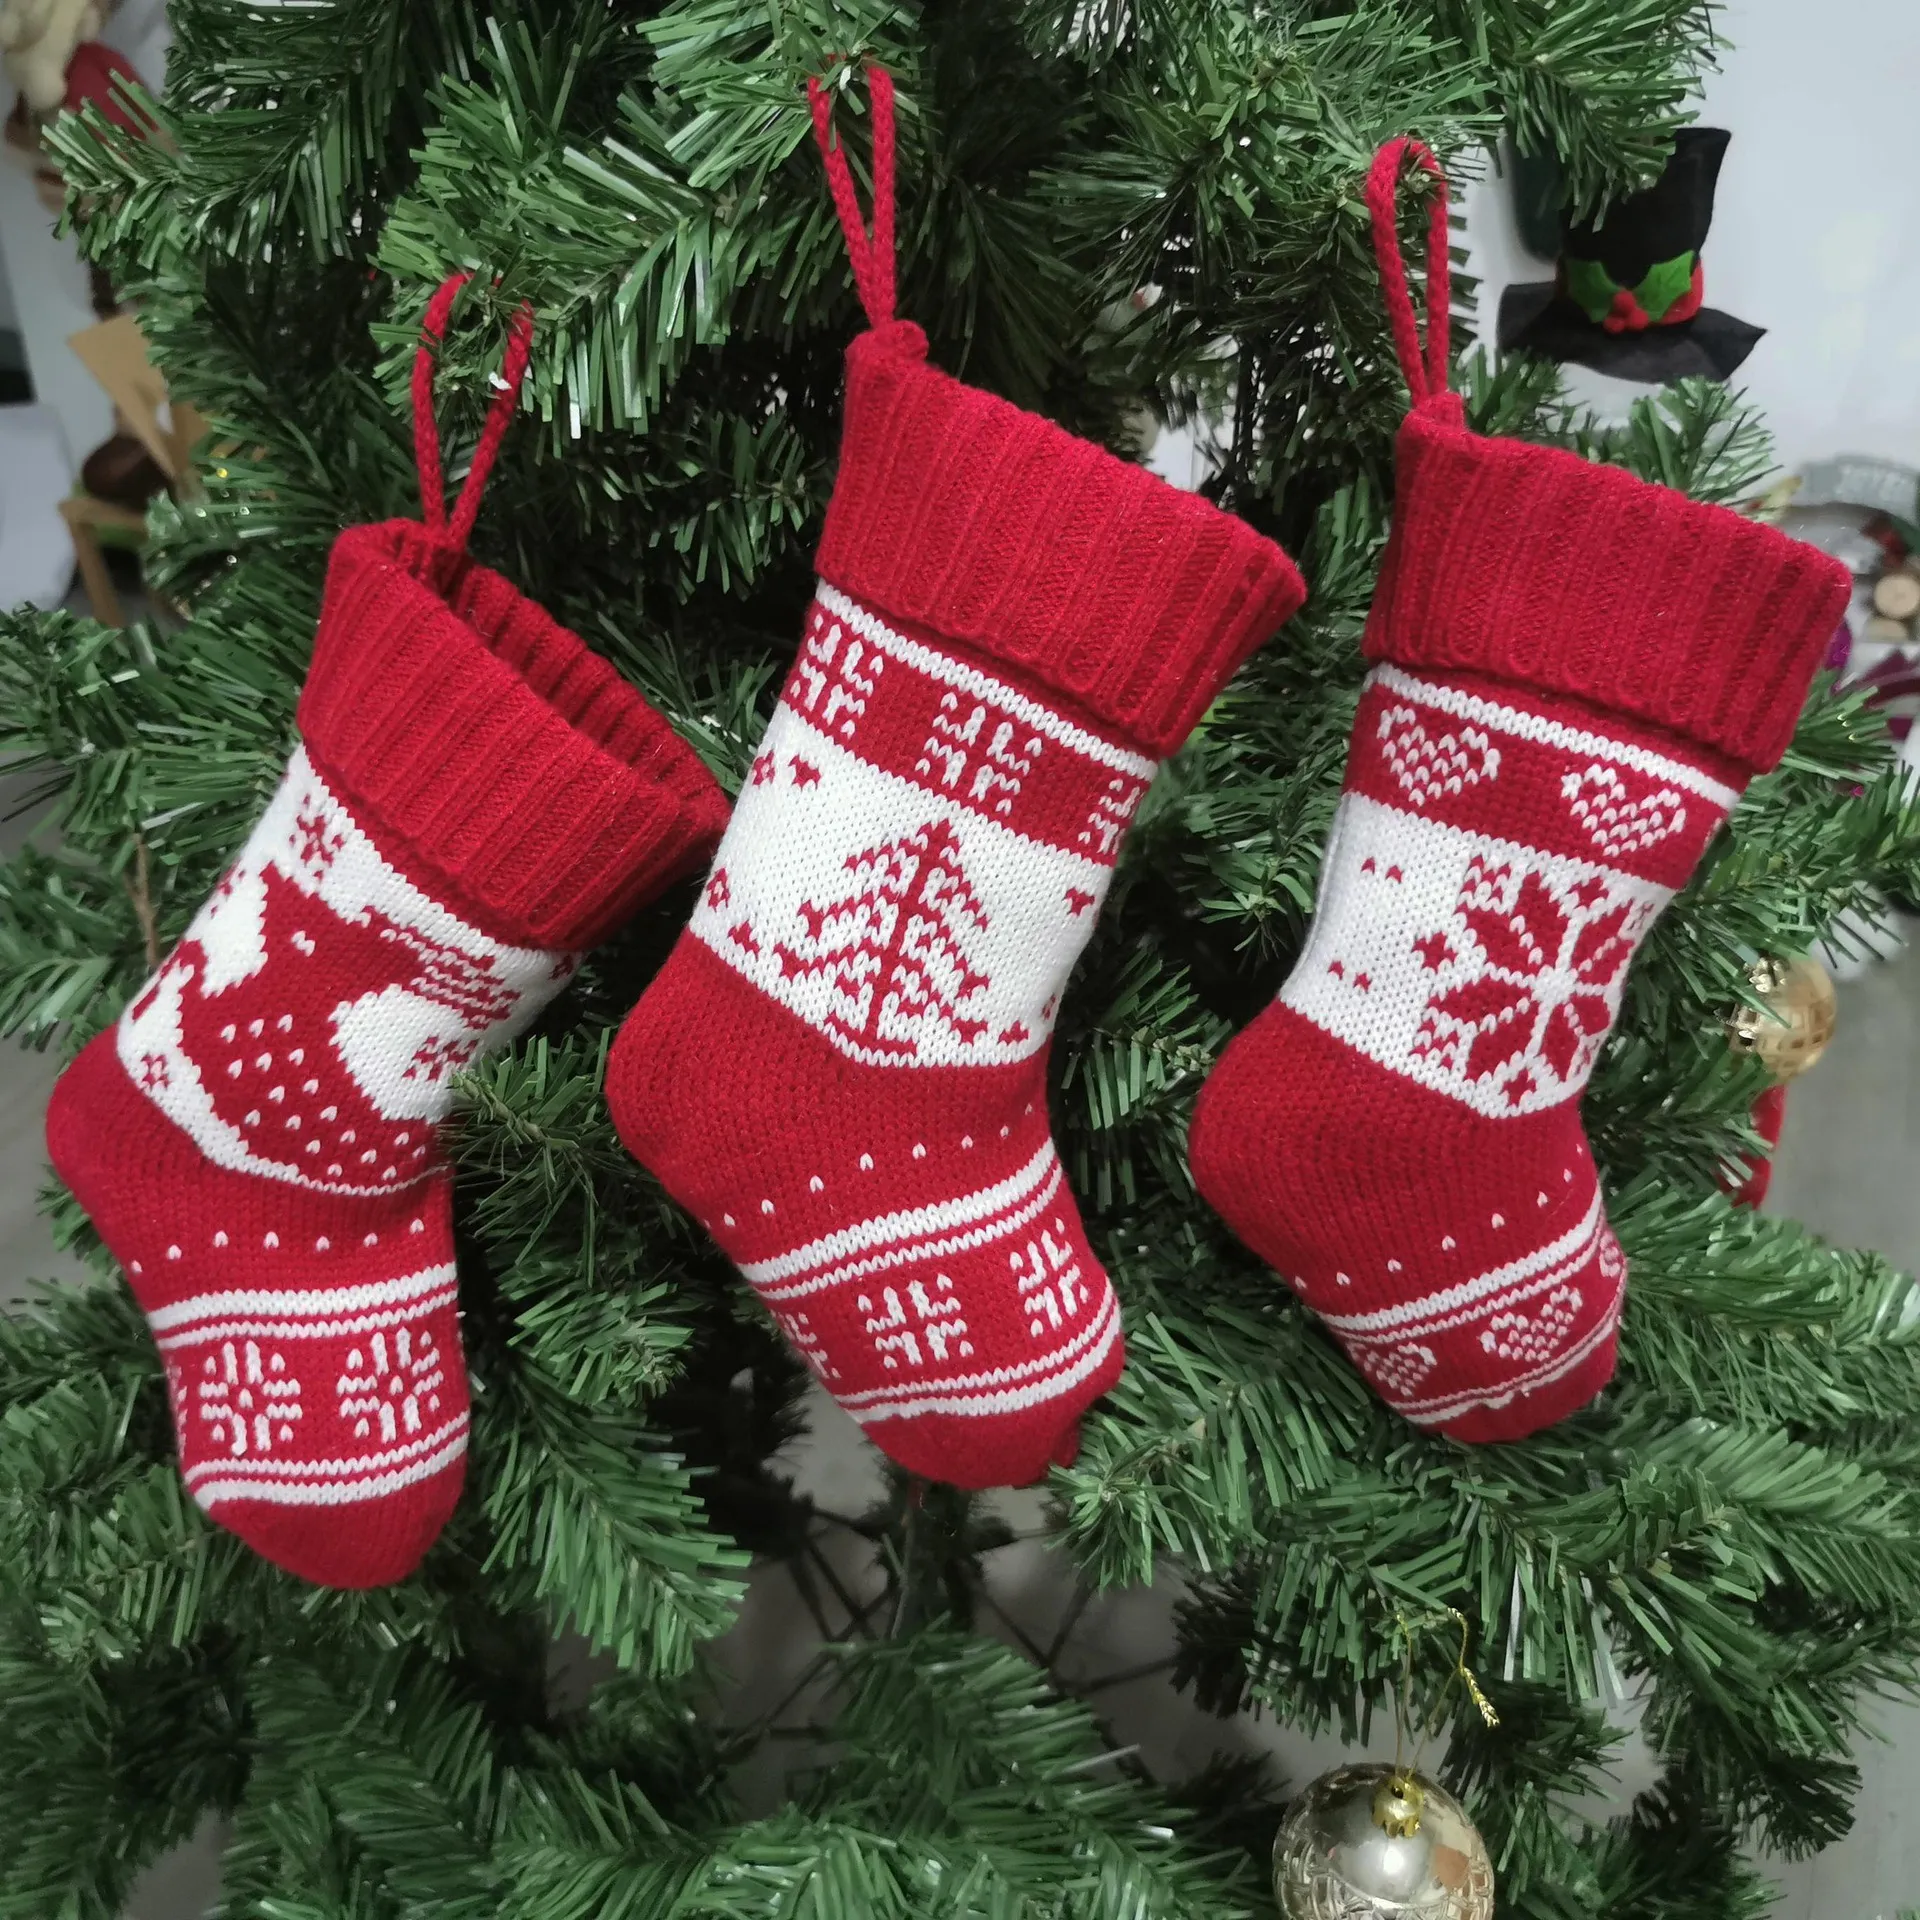 Boże Narodzenie Stocking Dzianiny Prezent Skarpety Drzewo Renifer Snowflake Xmas Drzewo Ornament Na Boże Narodzenie Dekoracje Dom JK2011XB